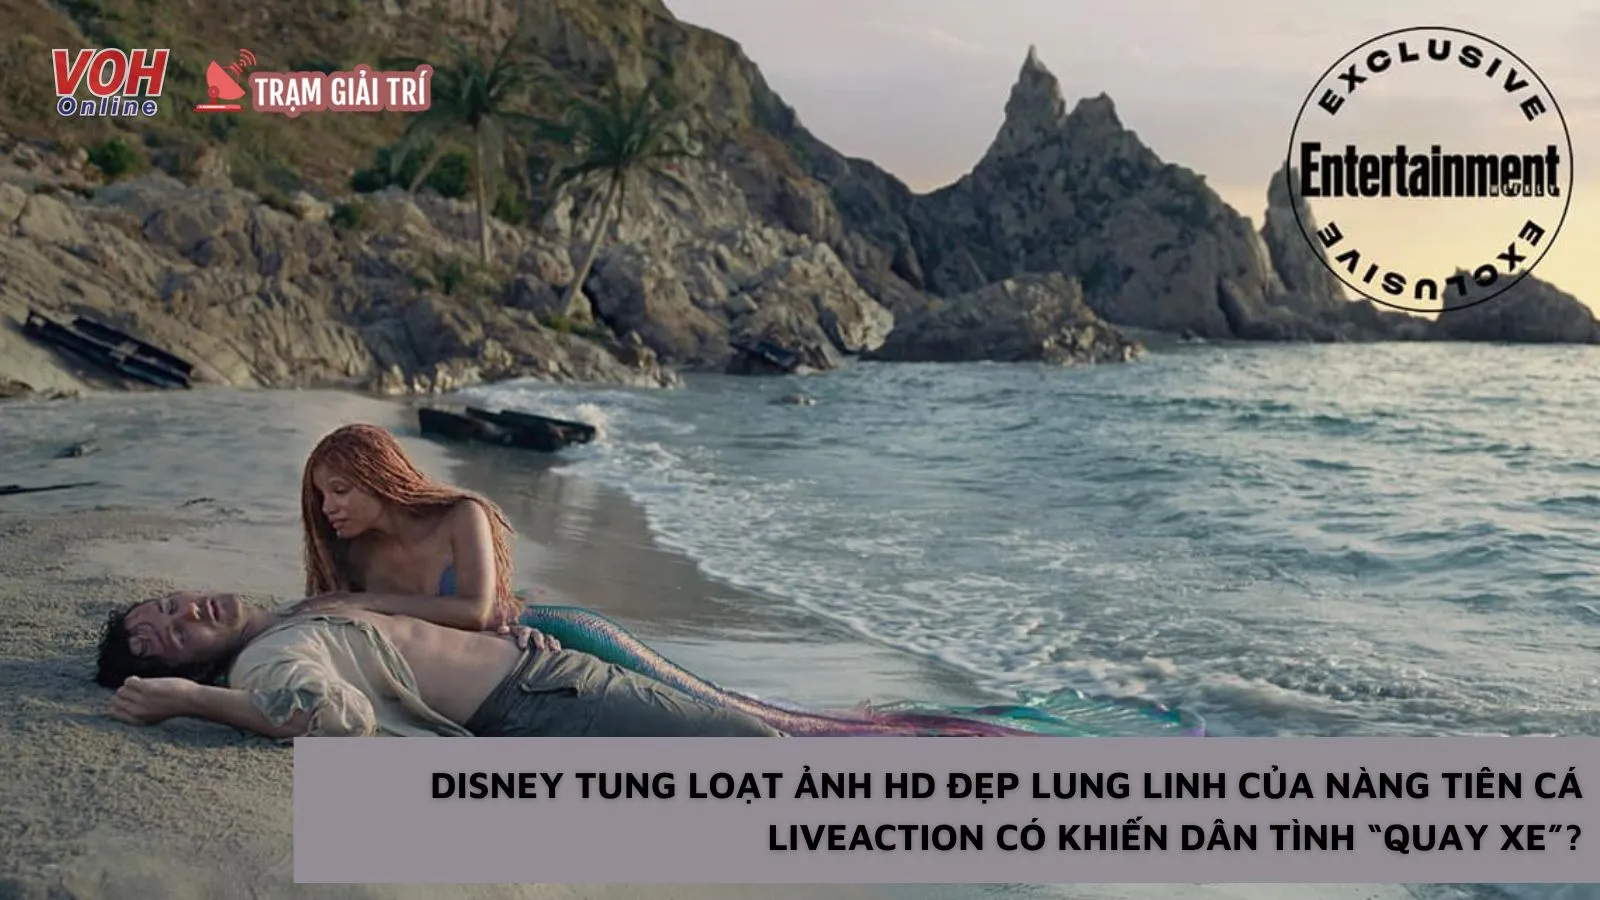 Disney tung loạt ảnh HD đẹp lung linh của Nàng Tiên Cá liveaction có khiến dân tình “quay xe”?